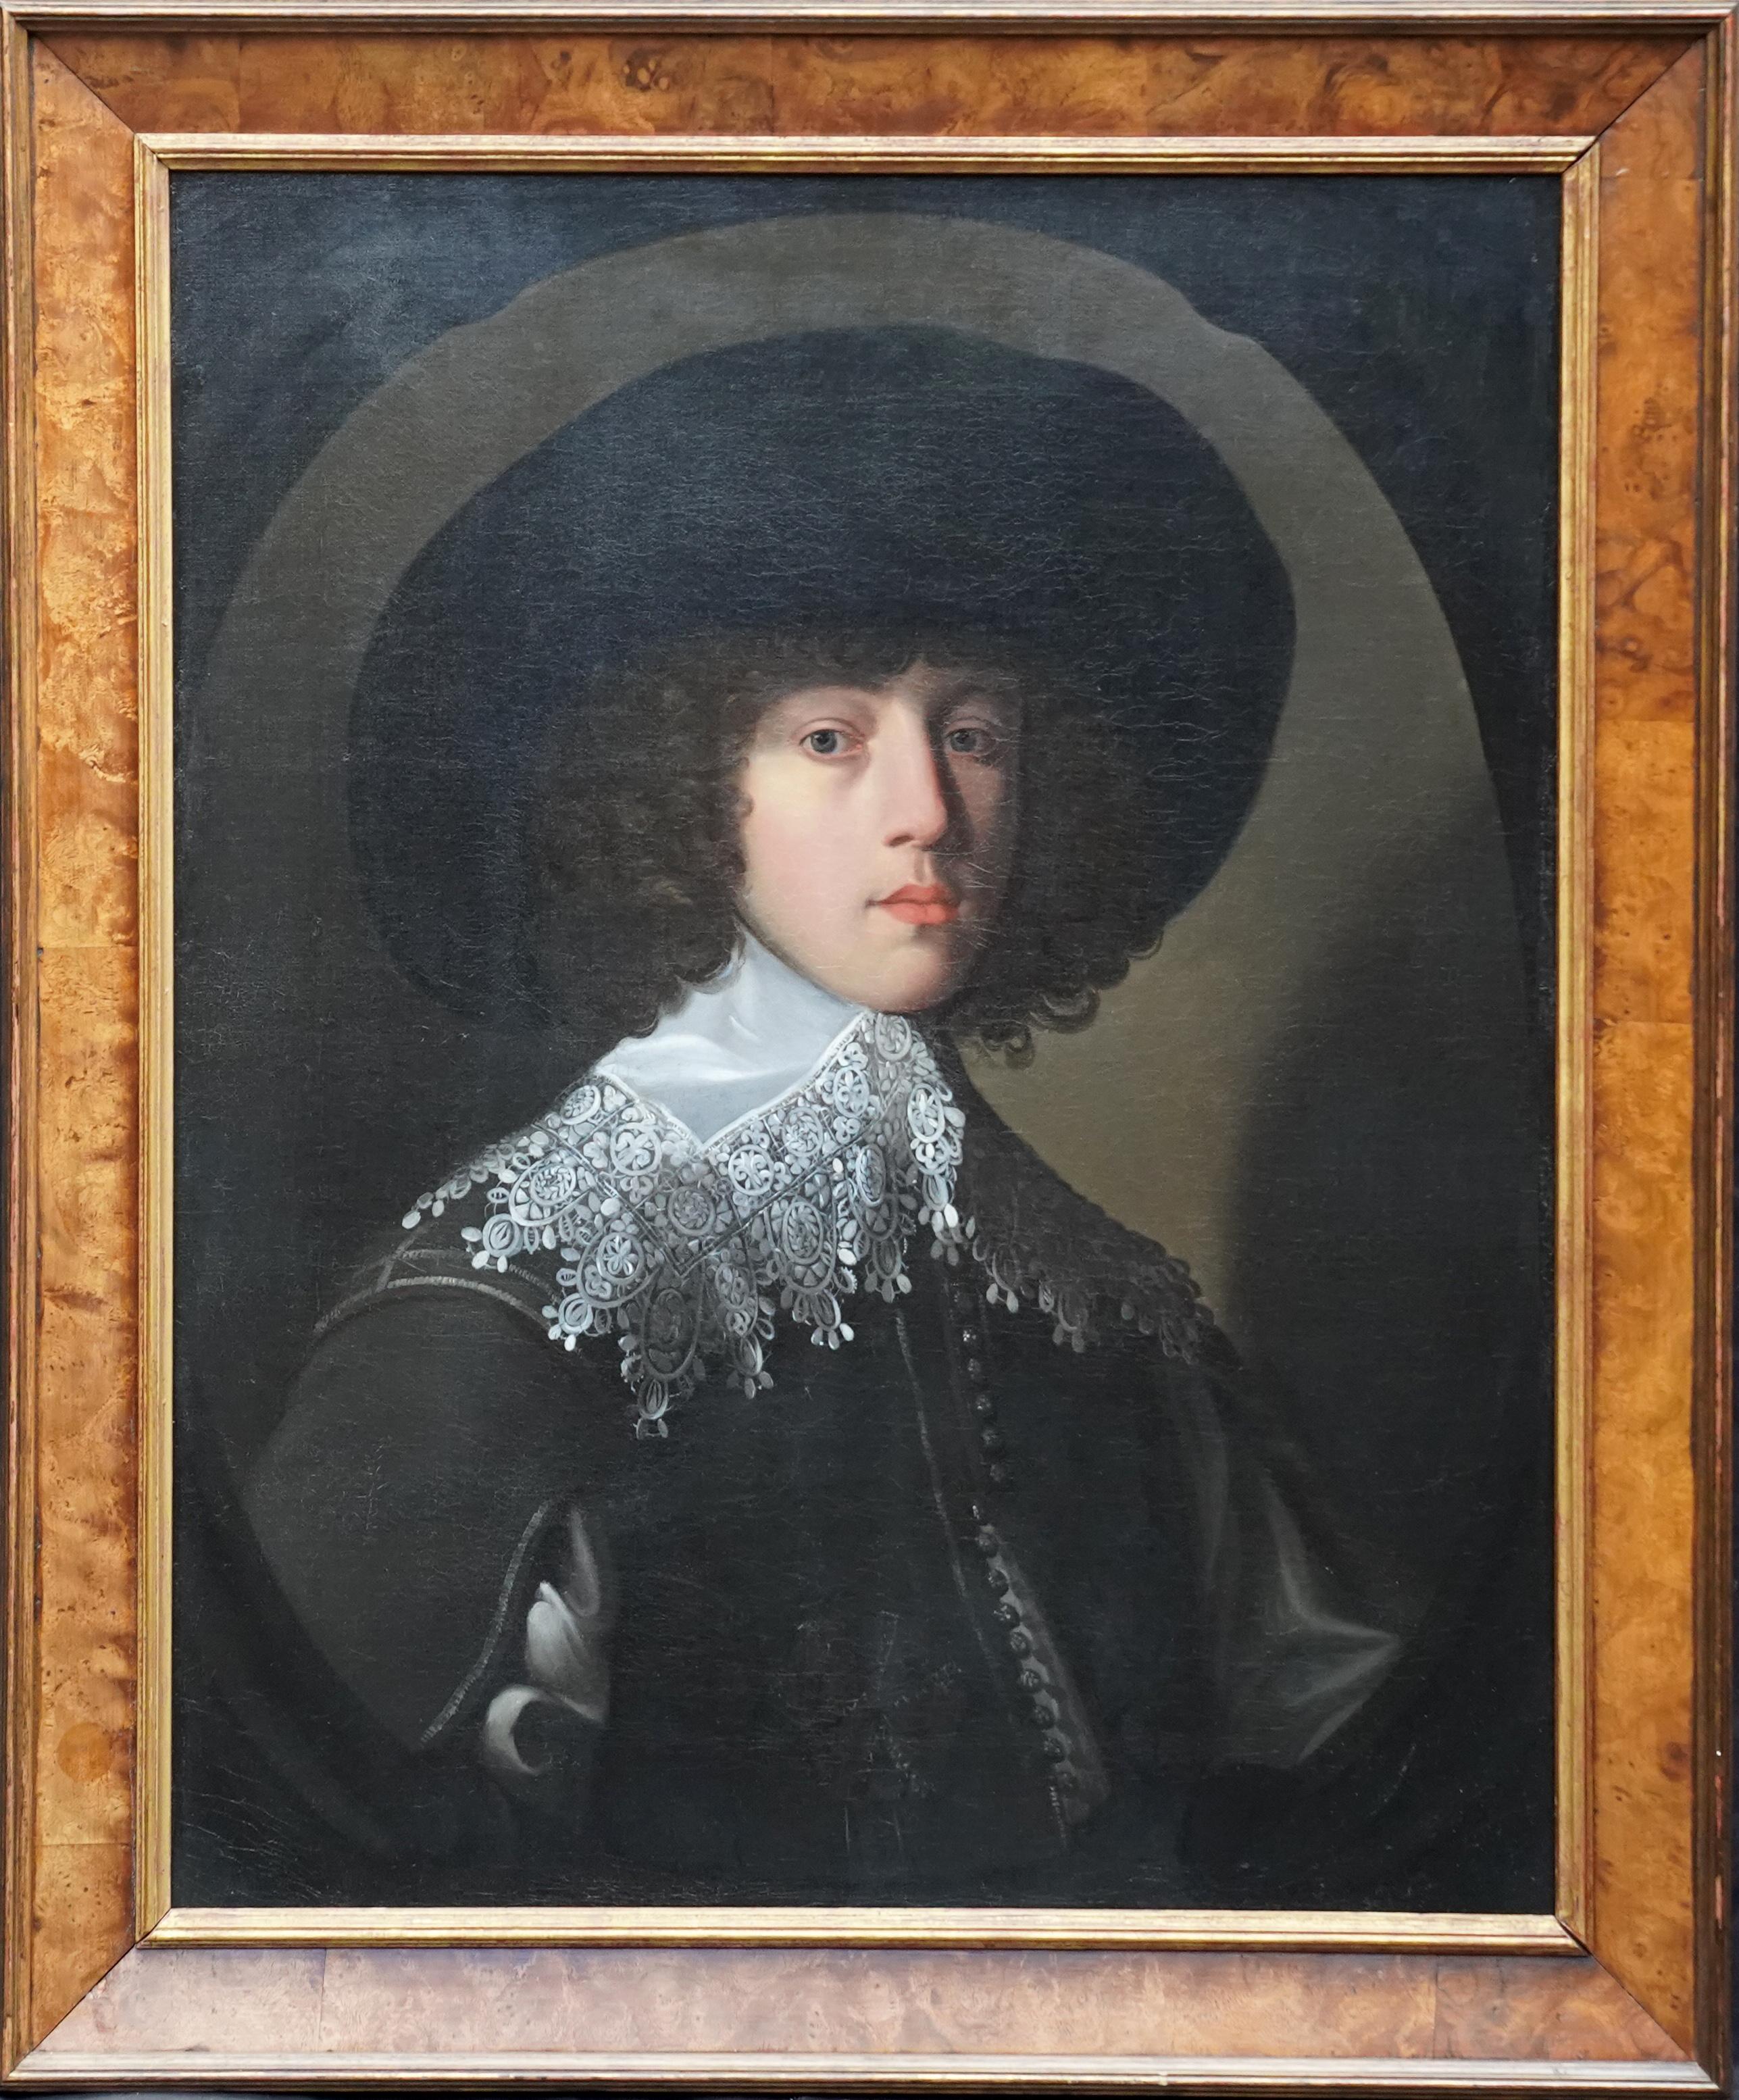 Porträt eines jungen Gentleman – niederländisches Porträt-Ölgemälde eines Alten Meisters aus dem 17. Jahrhundert